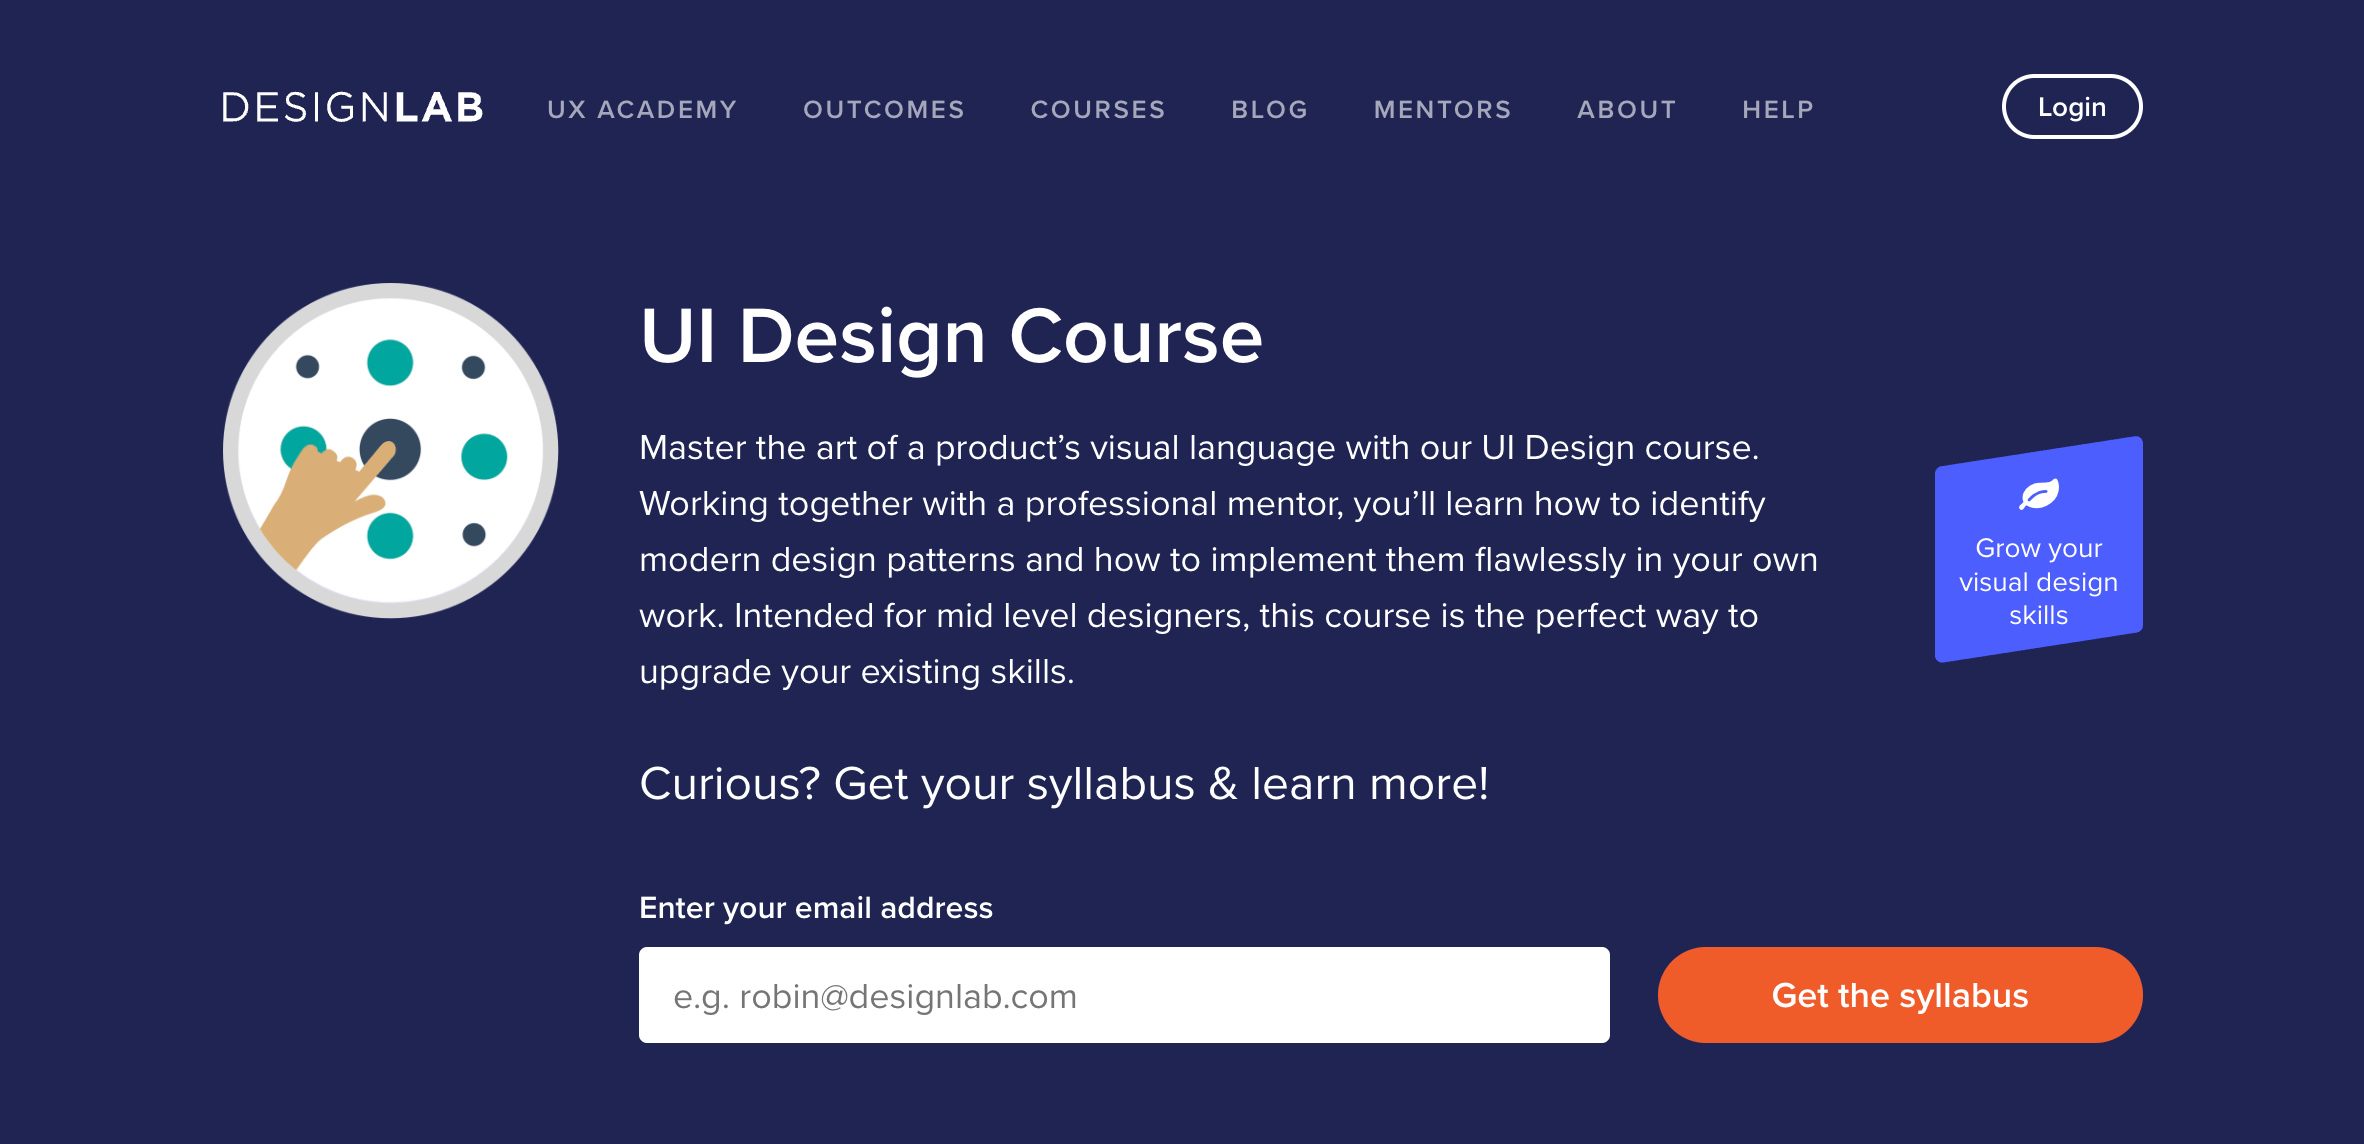 Designlab UI Design Course